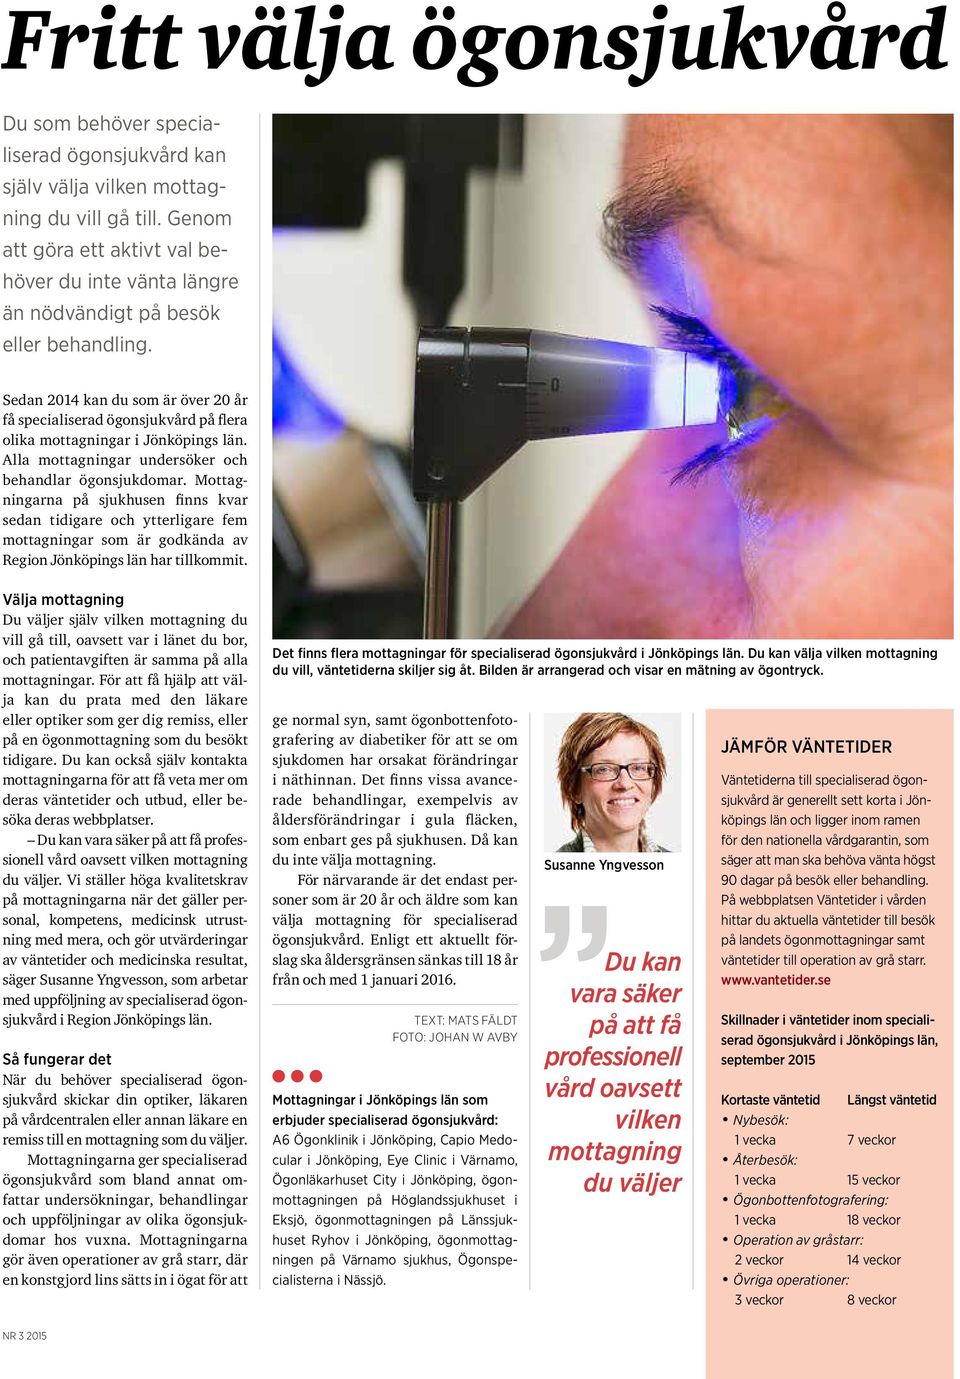 Sedan 2014 kan du som är över 20 år få specialiserad ögonsjukvård på flera olika mottagningar i Jönköpings län. Alla mottagningar undersöker och behandlar ögonsjukdomar.